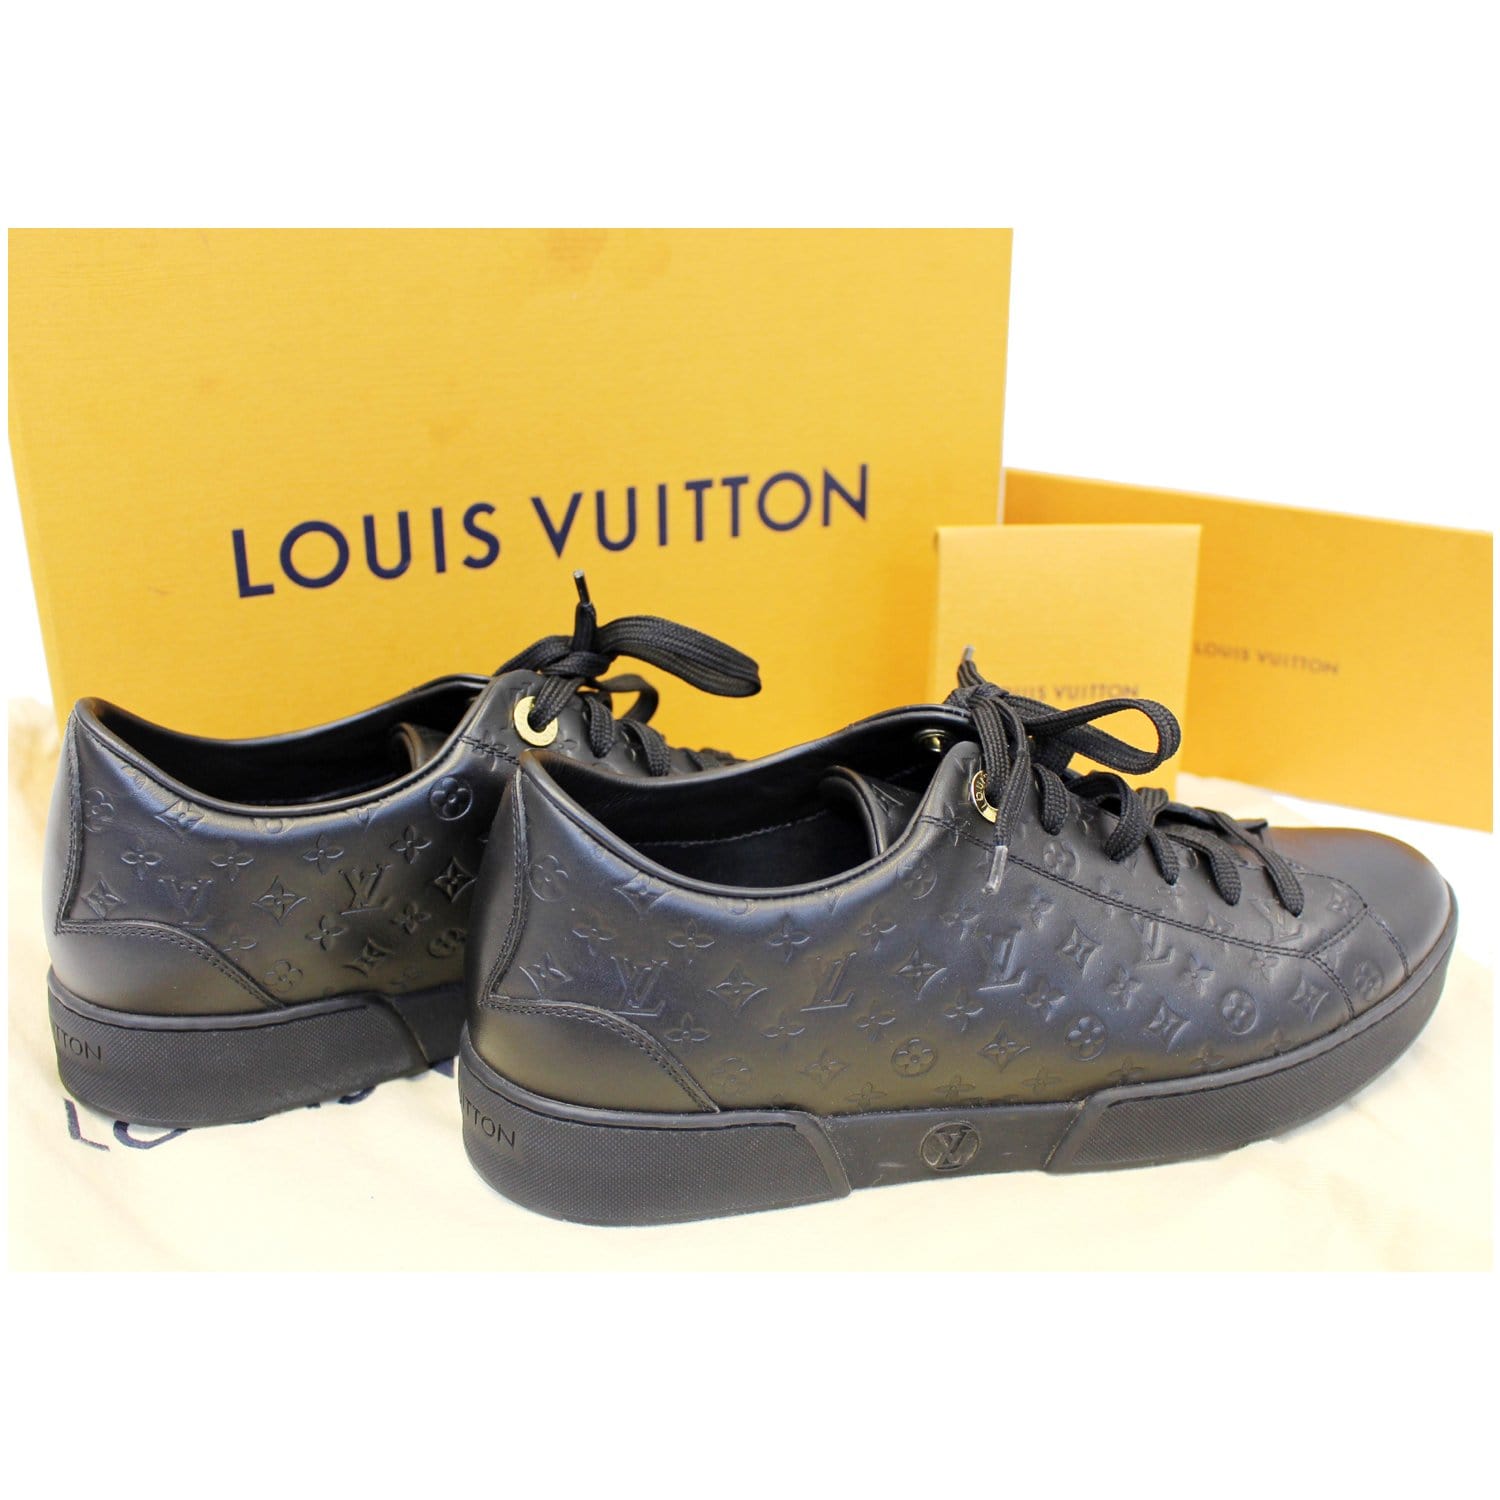 Louis Vuitton ra mắt bộ sưu tập dành riêng cho trẻ em